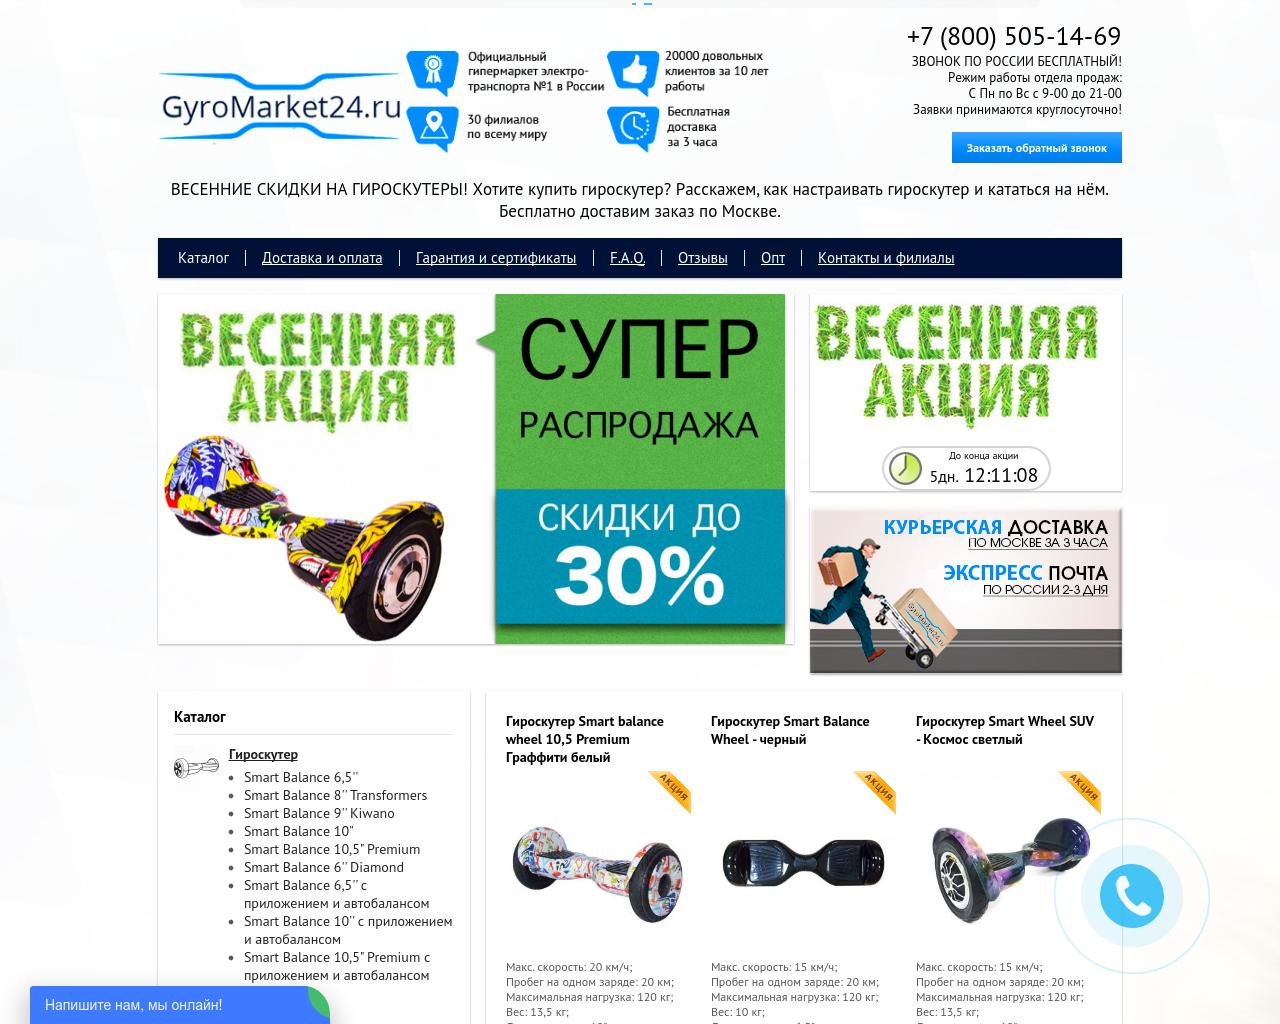 Изображение сайта gyromarket24.ru в разрешении 1280x1024